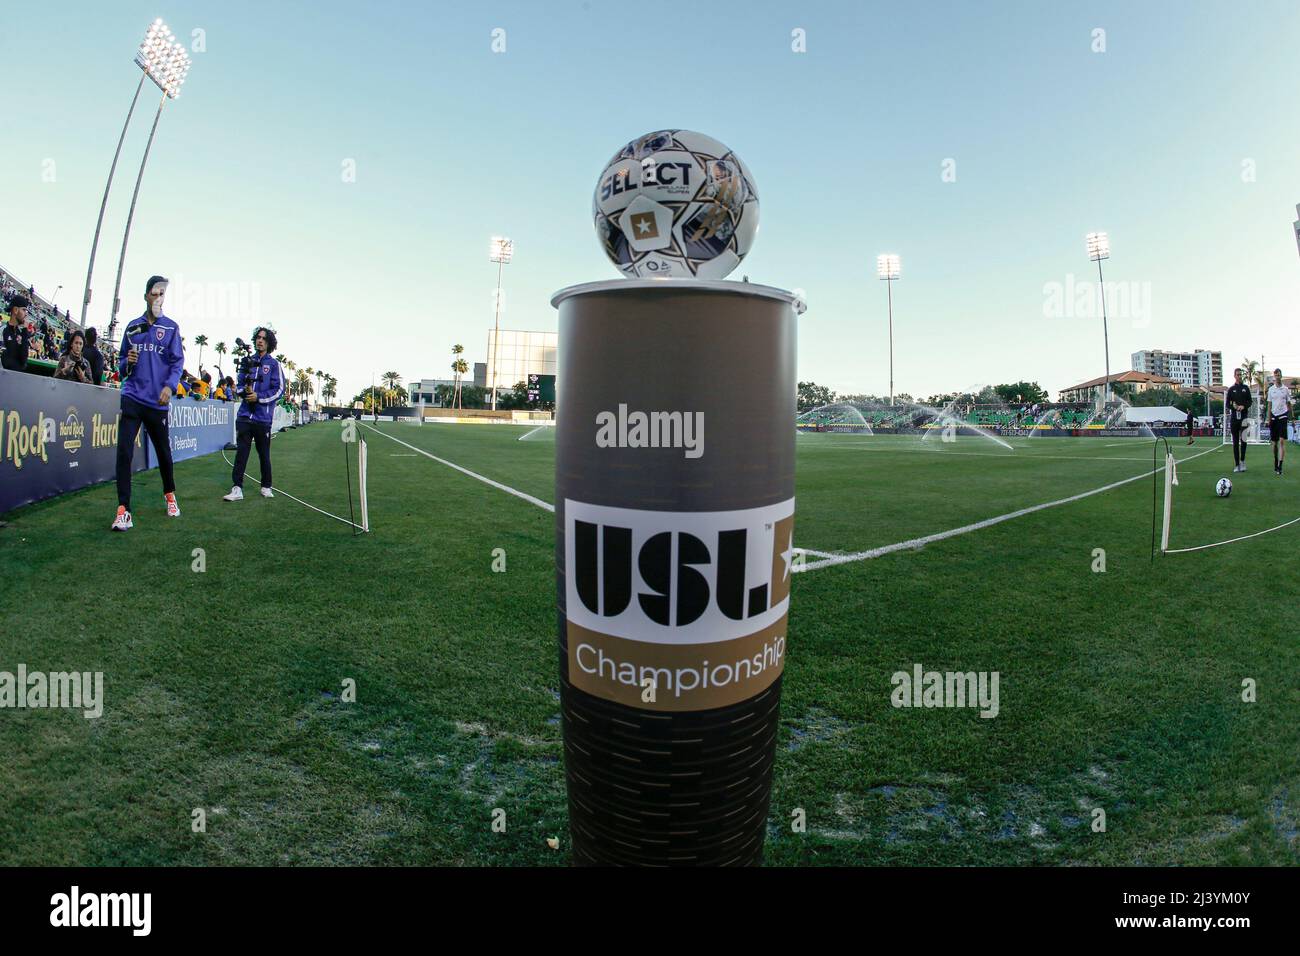 Saint-Pétersbourg, FL : une vue générale du ballon de jeu et du terrain lors d'un match de football USL entre les jeux de Tampa Bay et le Miami FC, samedi 9 avril, Banque D'Images